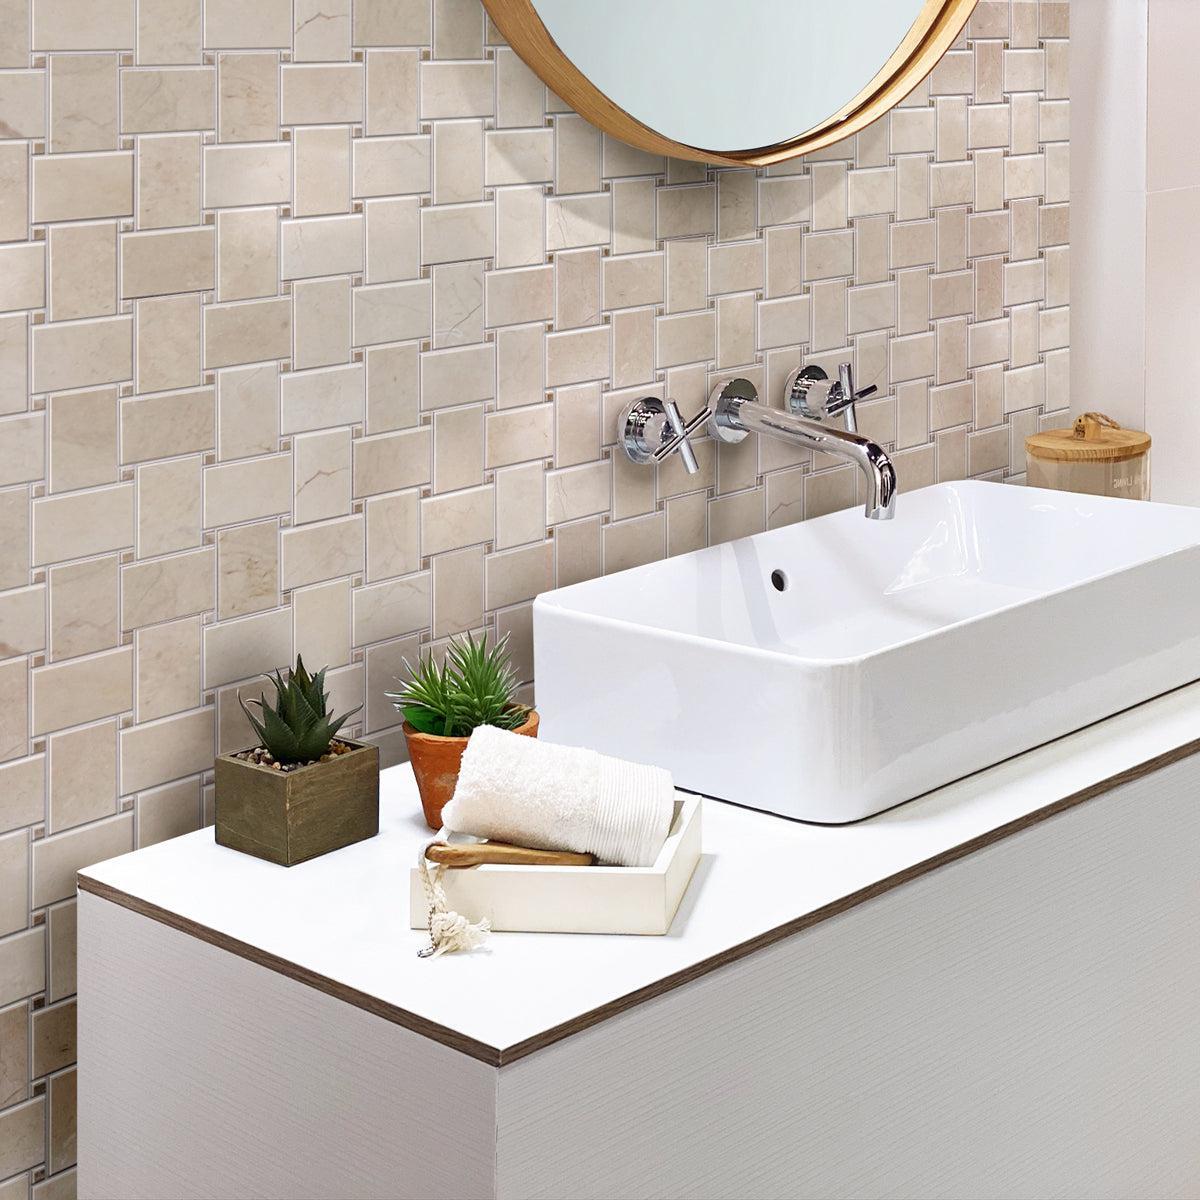 Crema Marfil Basket Weave Marble Mosaic Tile Bathroom Backsplash